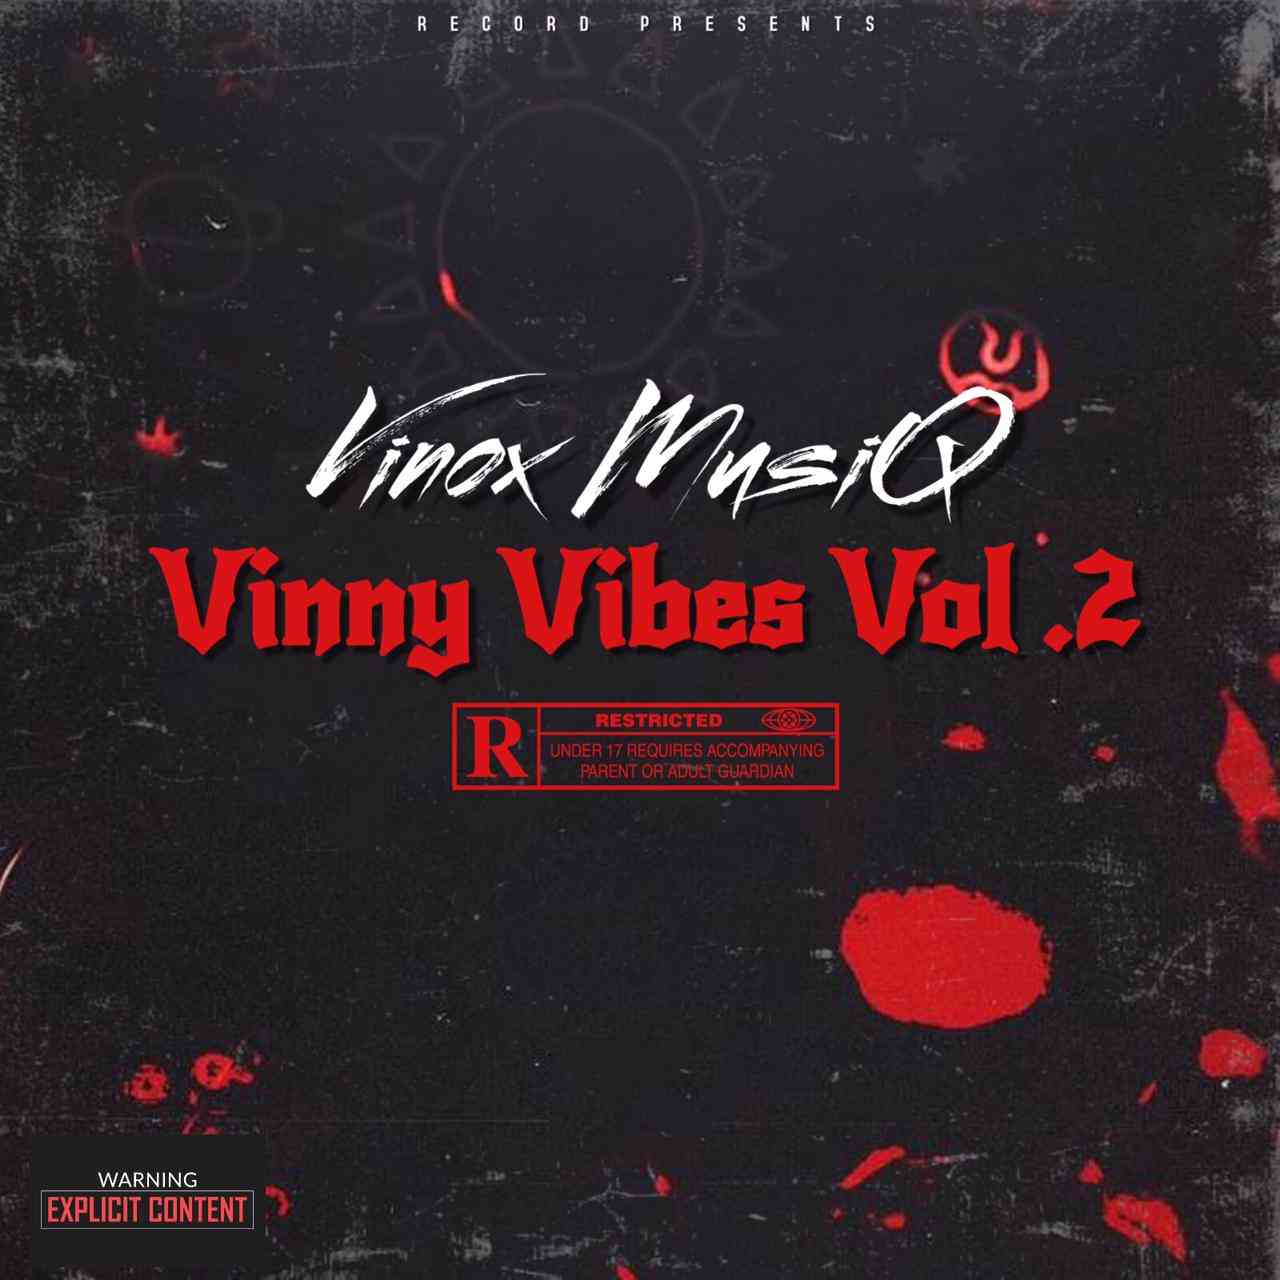 Vinox Musiq Vinny Vibes Vol.2 Mp3 Download Fakaza